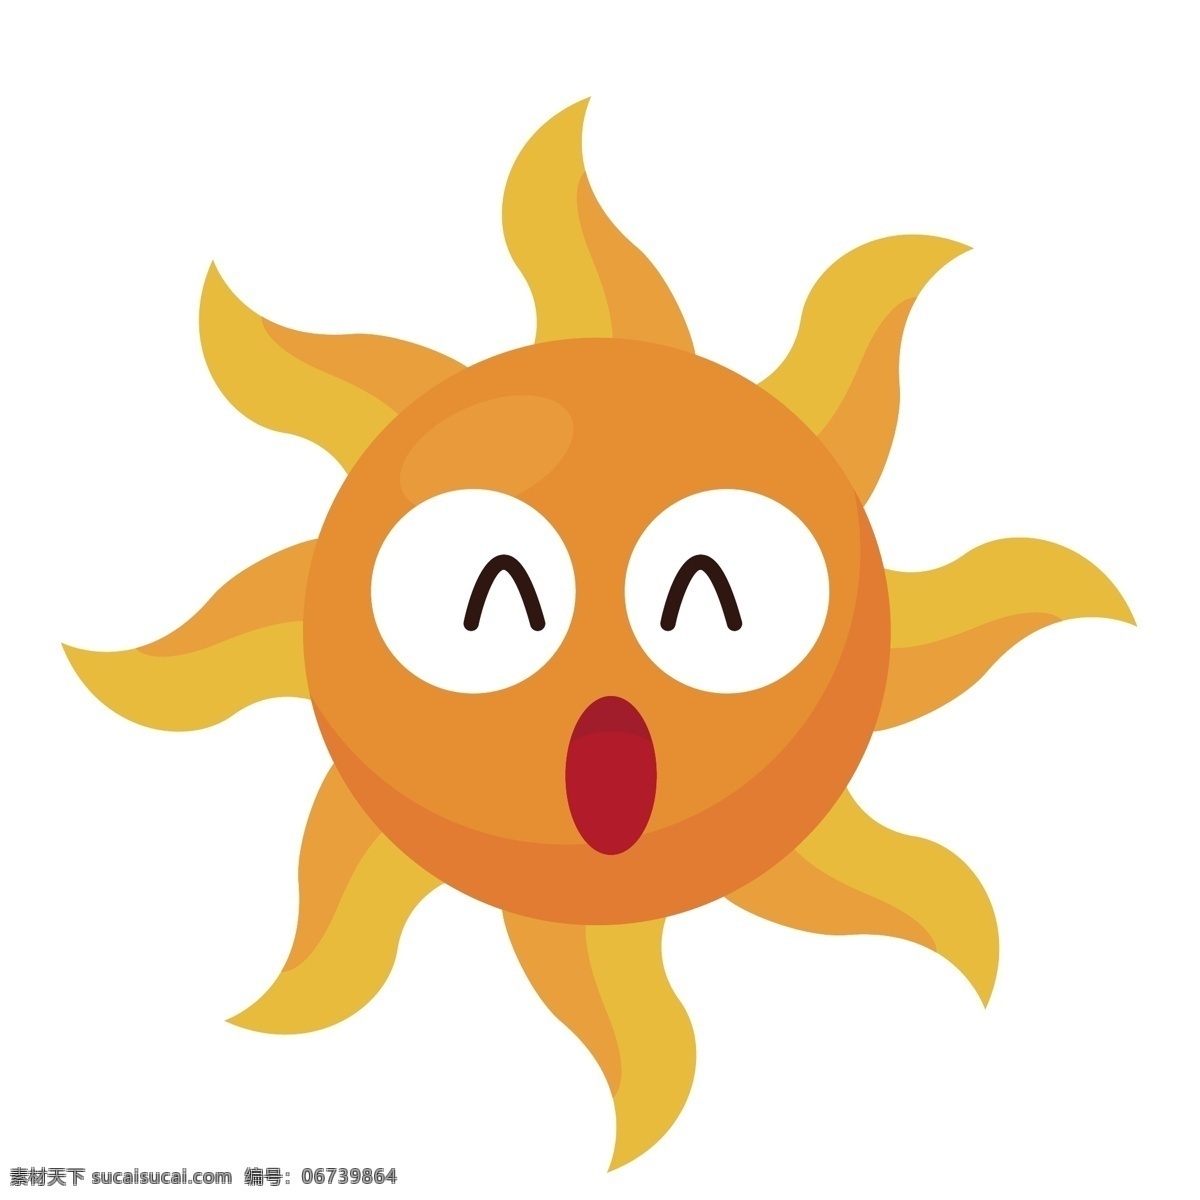 手绘 涂鸦 卡通 开心 太阳 涂鸦太阳 手绘太阳 卡通太阳 涂鸦大笑太阳 矢量太阳 可爱太阳 有趣太阳 表情太阳